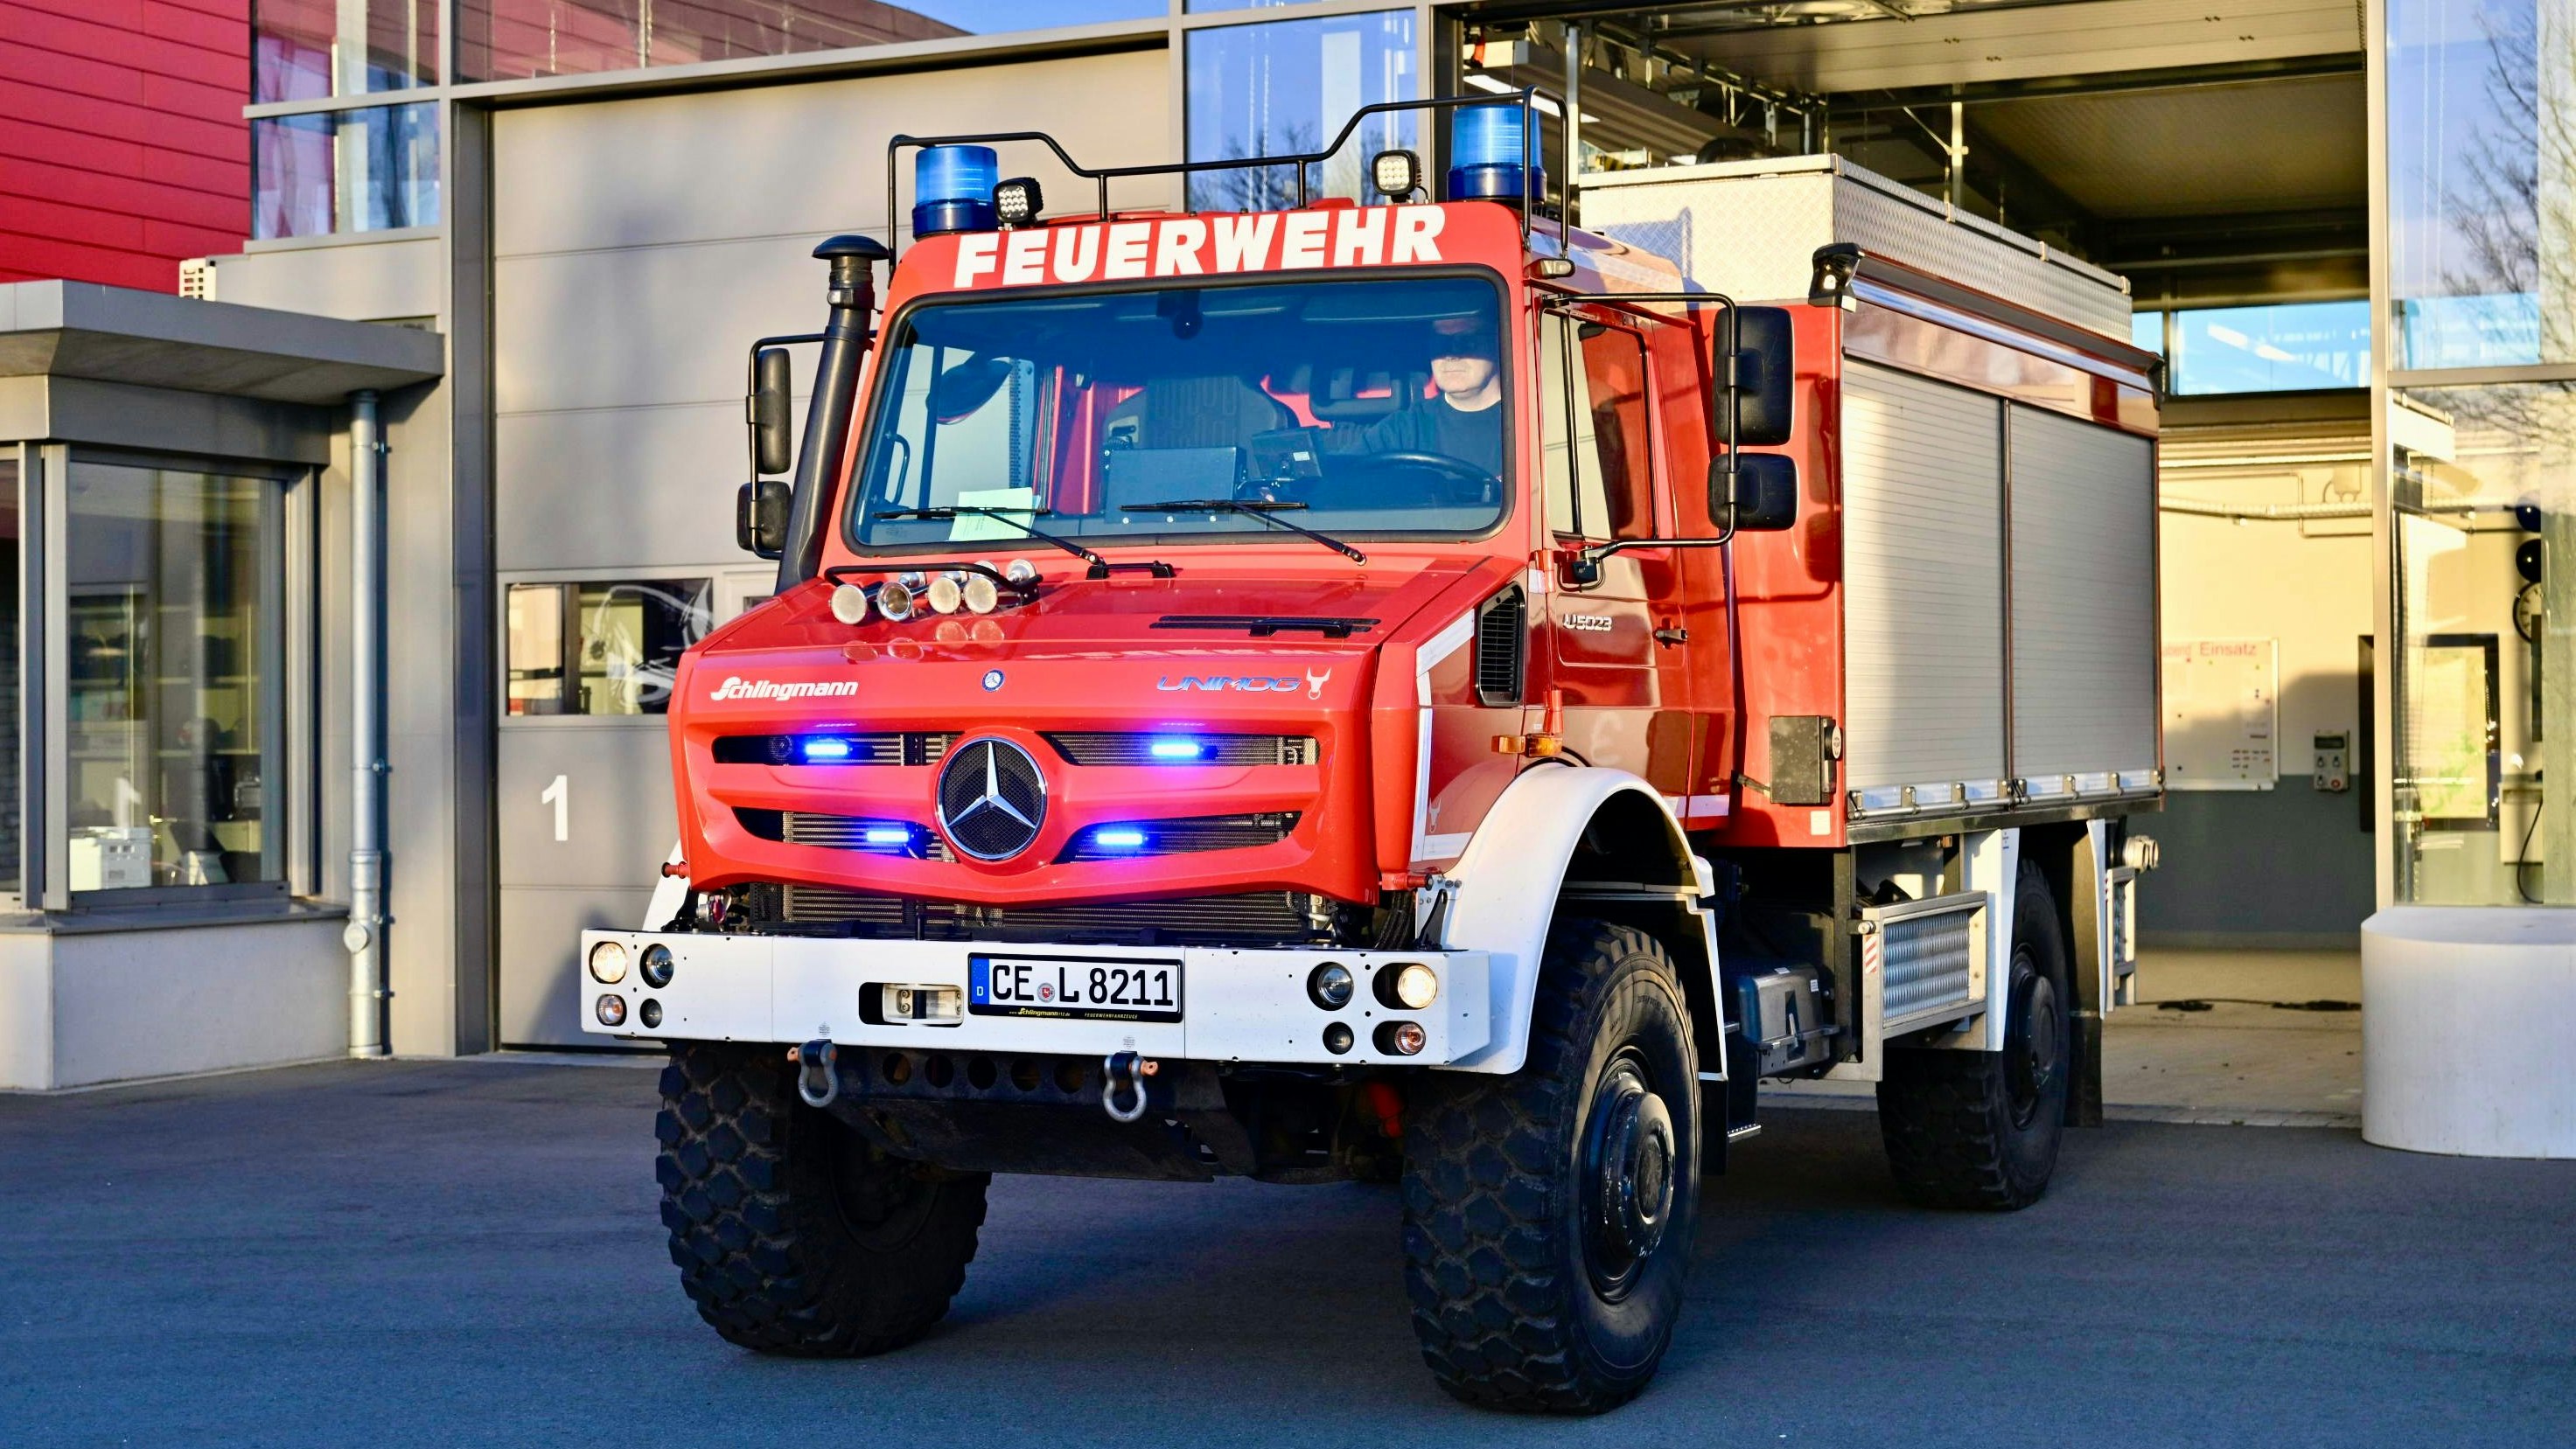 Unimog mit Aufbau der Firma Schlingmann. Das TLF 3000 wird jetzt von der Feuerwehr Vechta getestet. Danach probieren die Goldenstedter Kameraden das Fahrzeug aus. Foto: M. Niehues